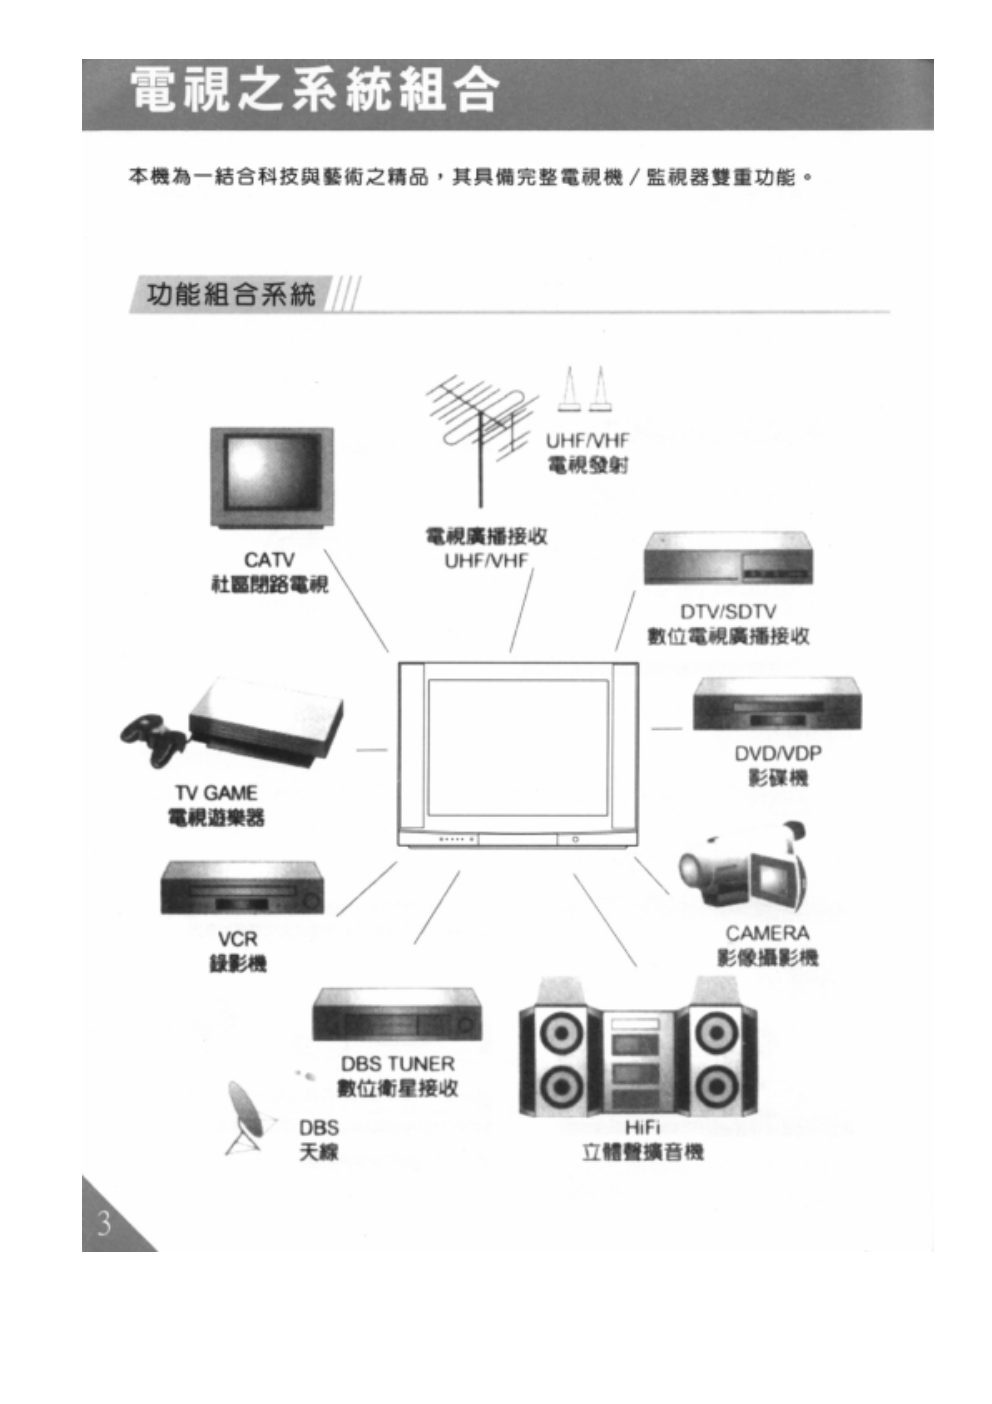 歌林HCT-293型数位倍频电视机使用说明书-3